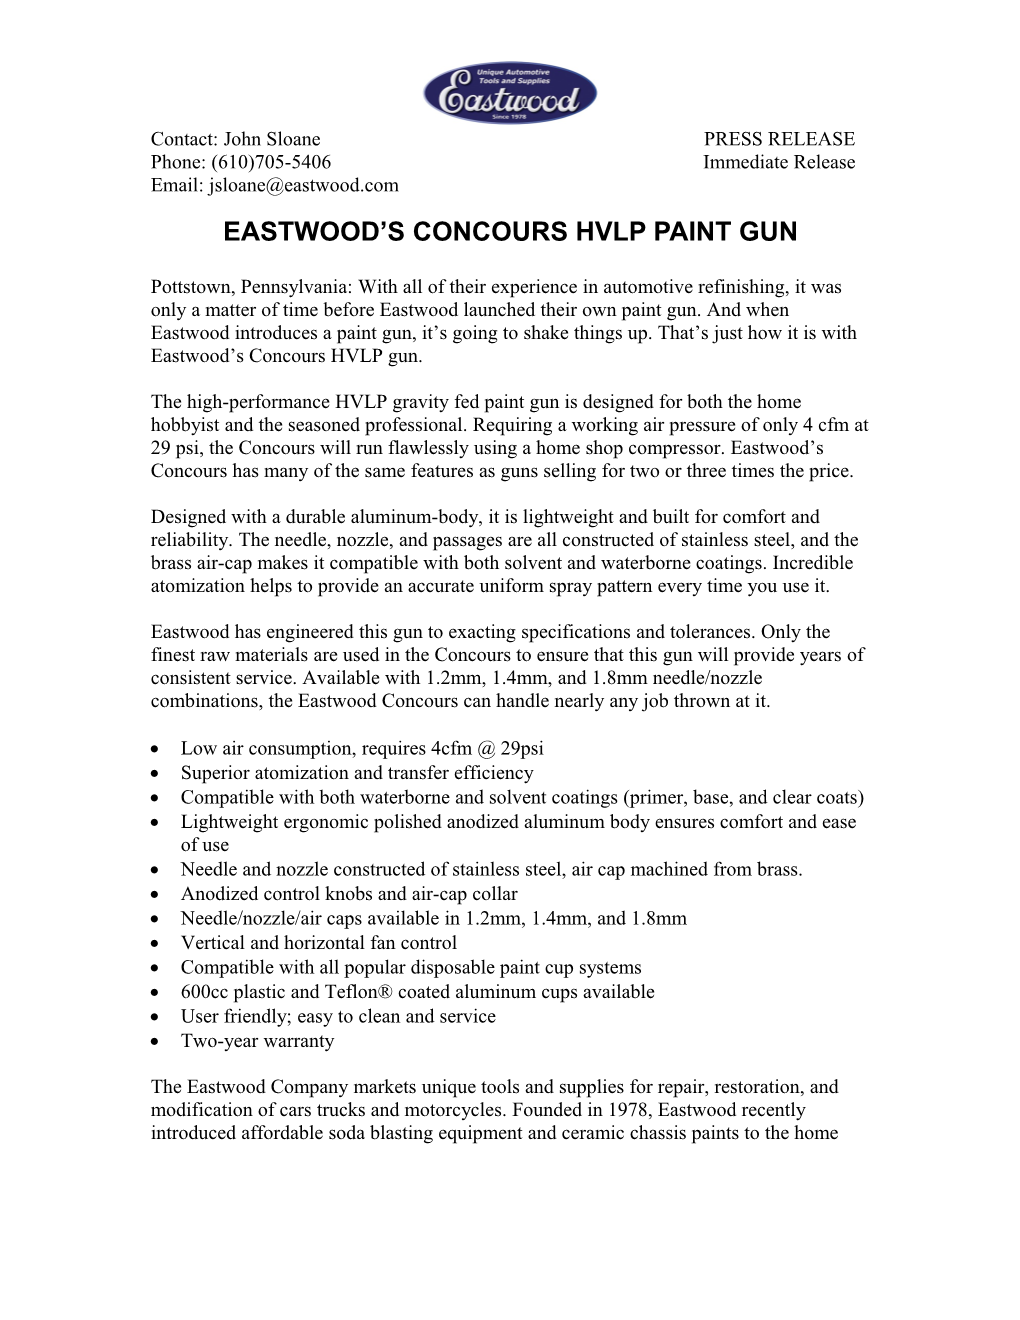 Eastwood's Concours HVLP Paint Gun